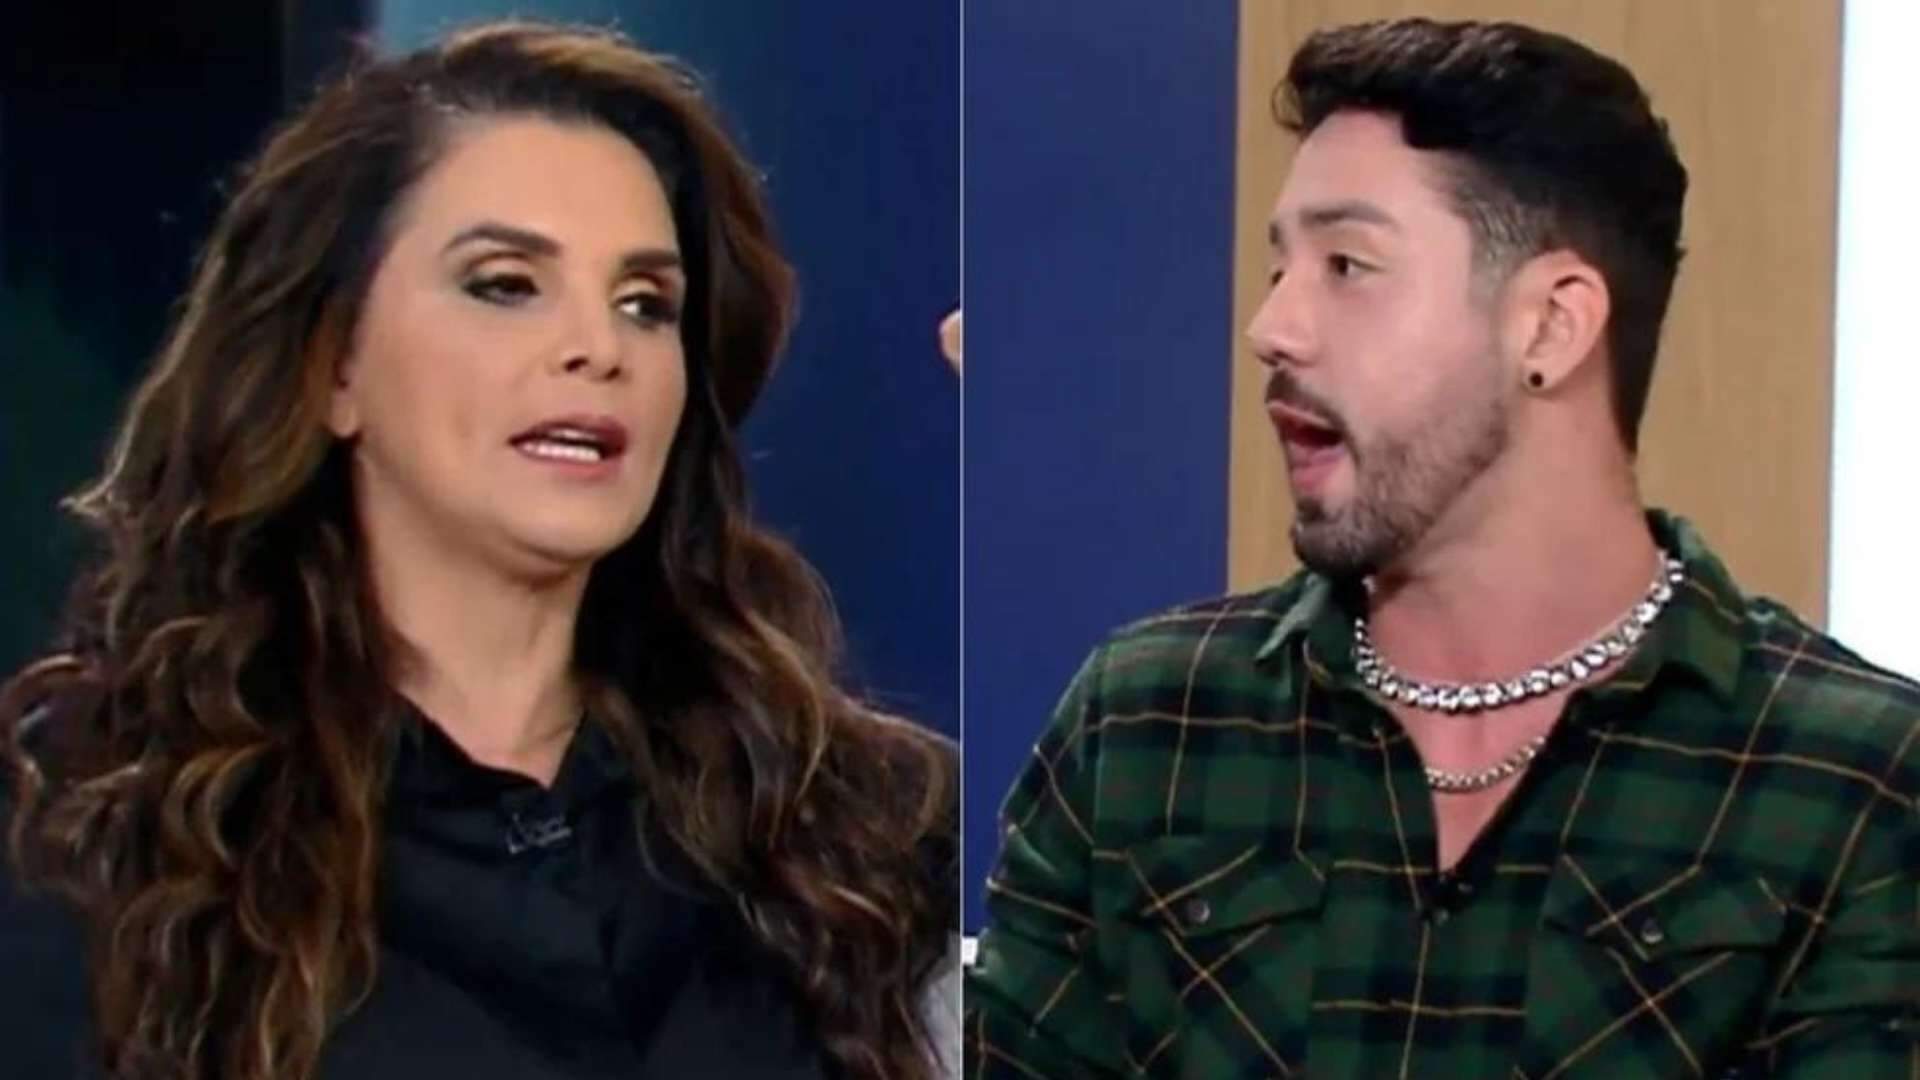 Luiza Ambiel e Rico Melquiades se ofendem e armam barraco nos bastidores da Record: “Teu c*!” - Metropolitana FM